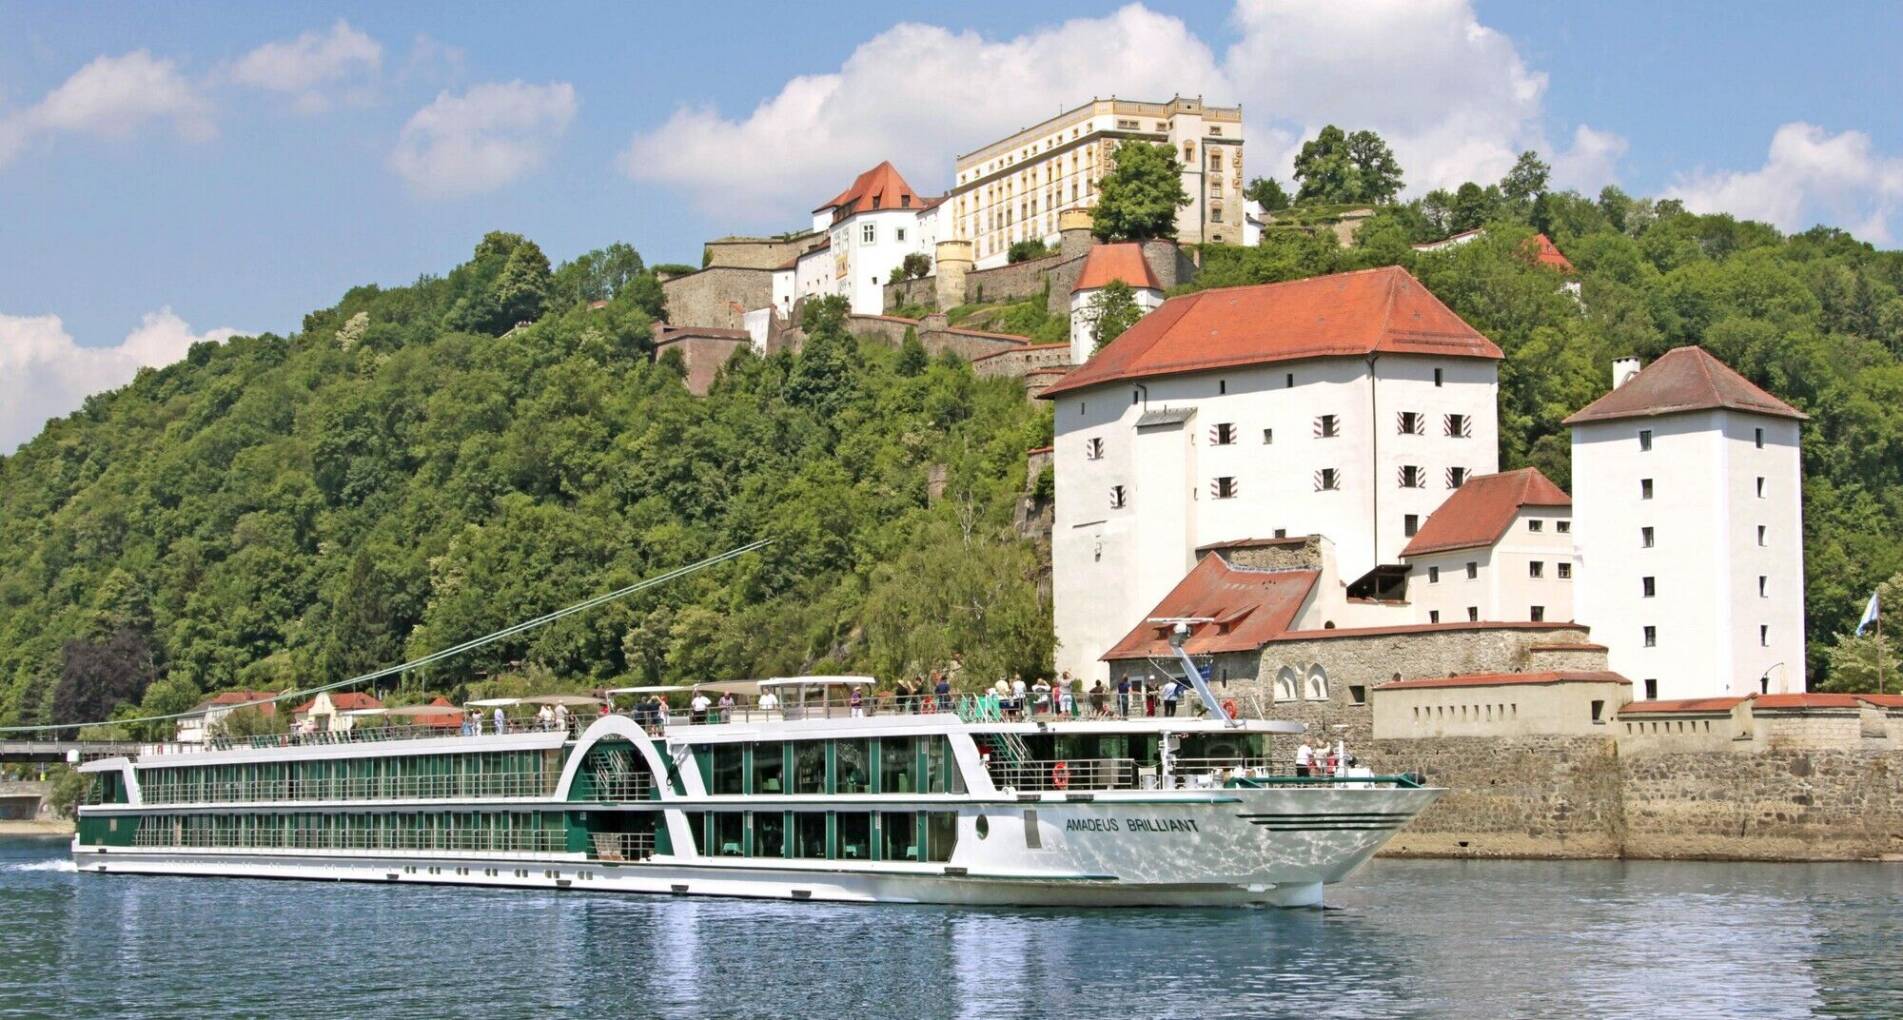 Donau, vierlandencruise door het hart van Europa - Oostenrijk - 1